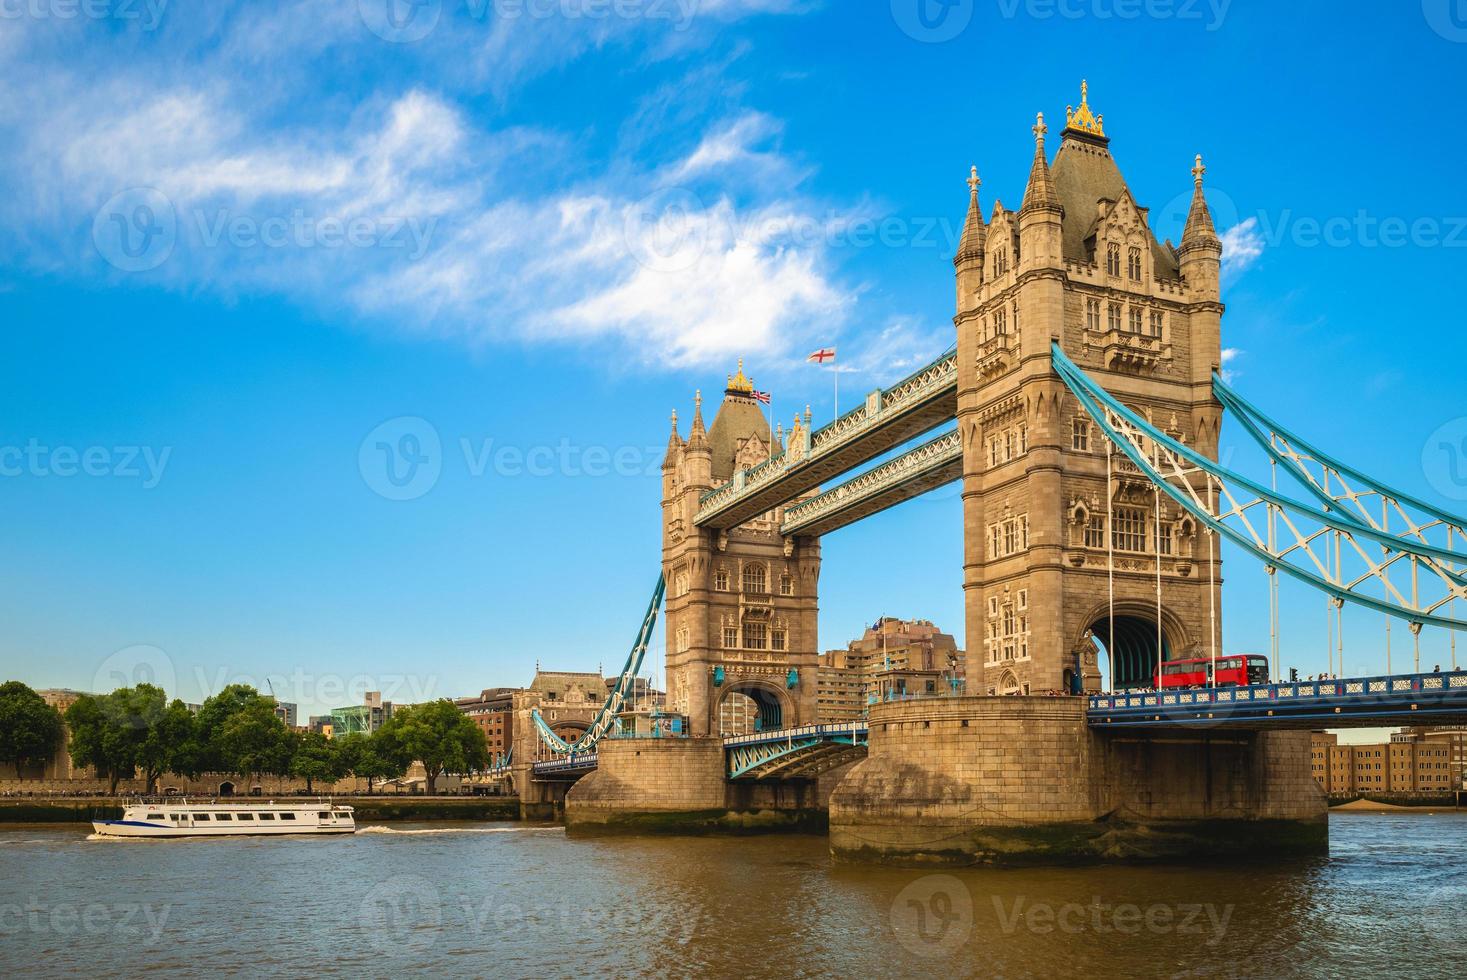 Tower Bridge von der Themse in London, England, Großbritannien? foto